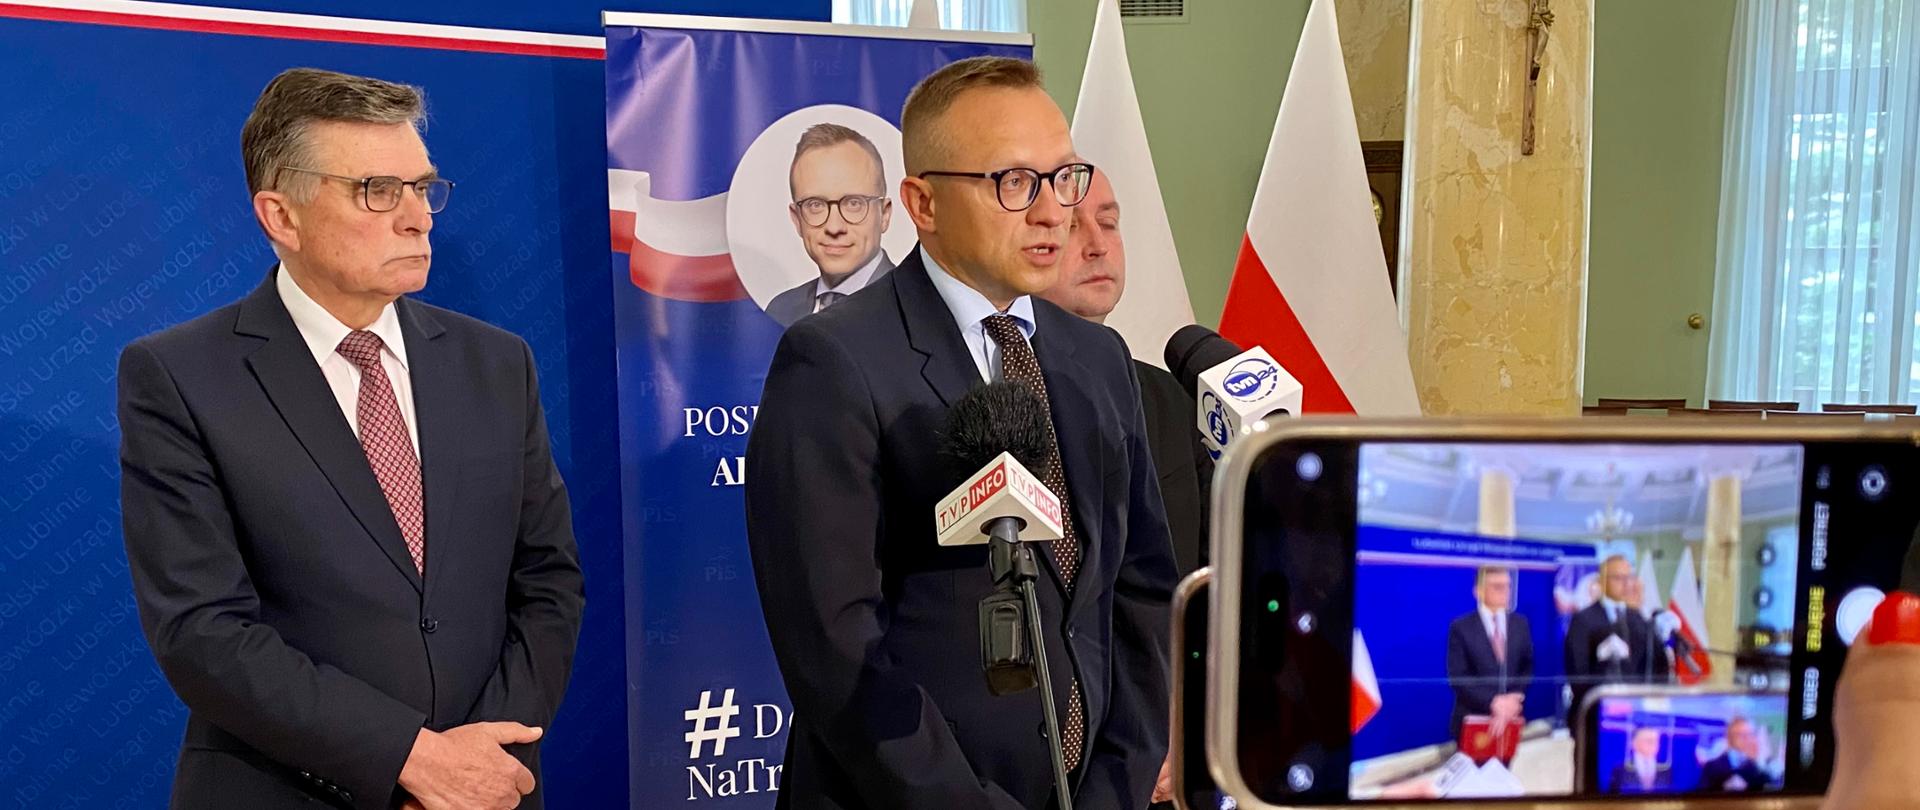 Konferencja prasowa ministra Artura Sobonia, wojewody lubelskiego Lecha Sprawki i radnego Piotra Bresia.